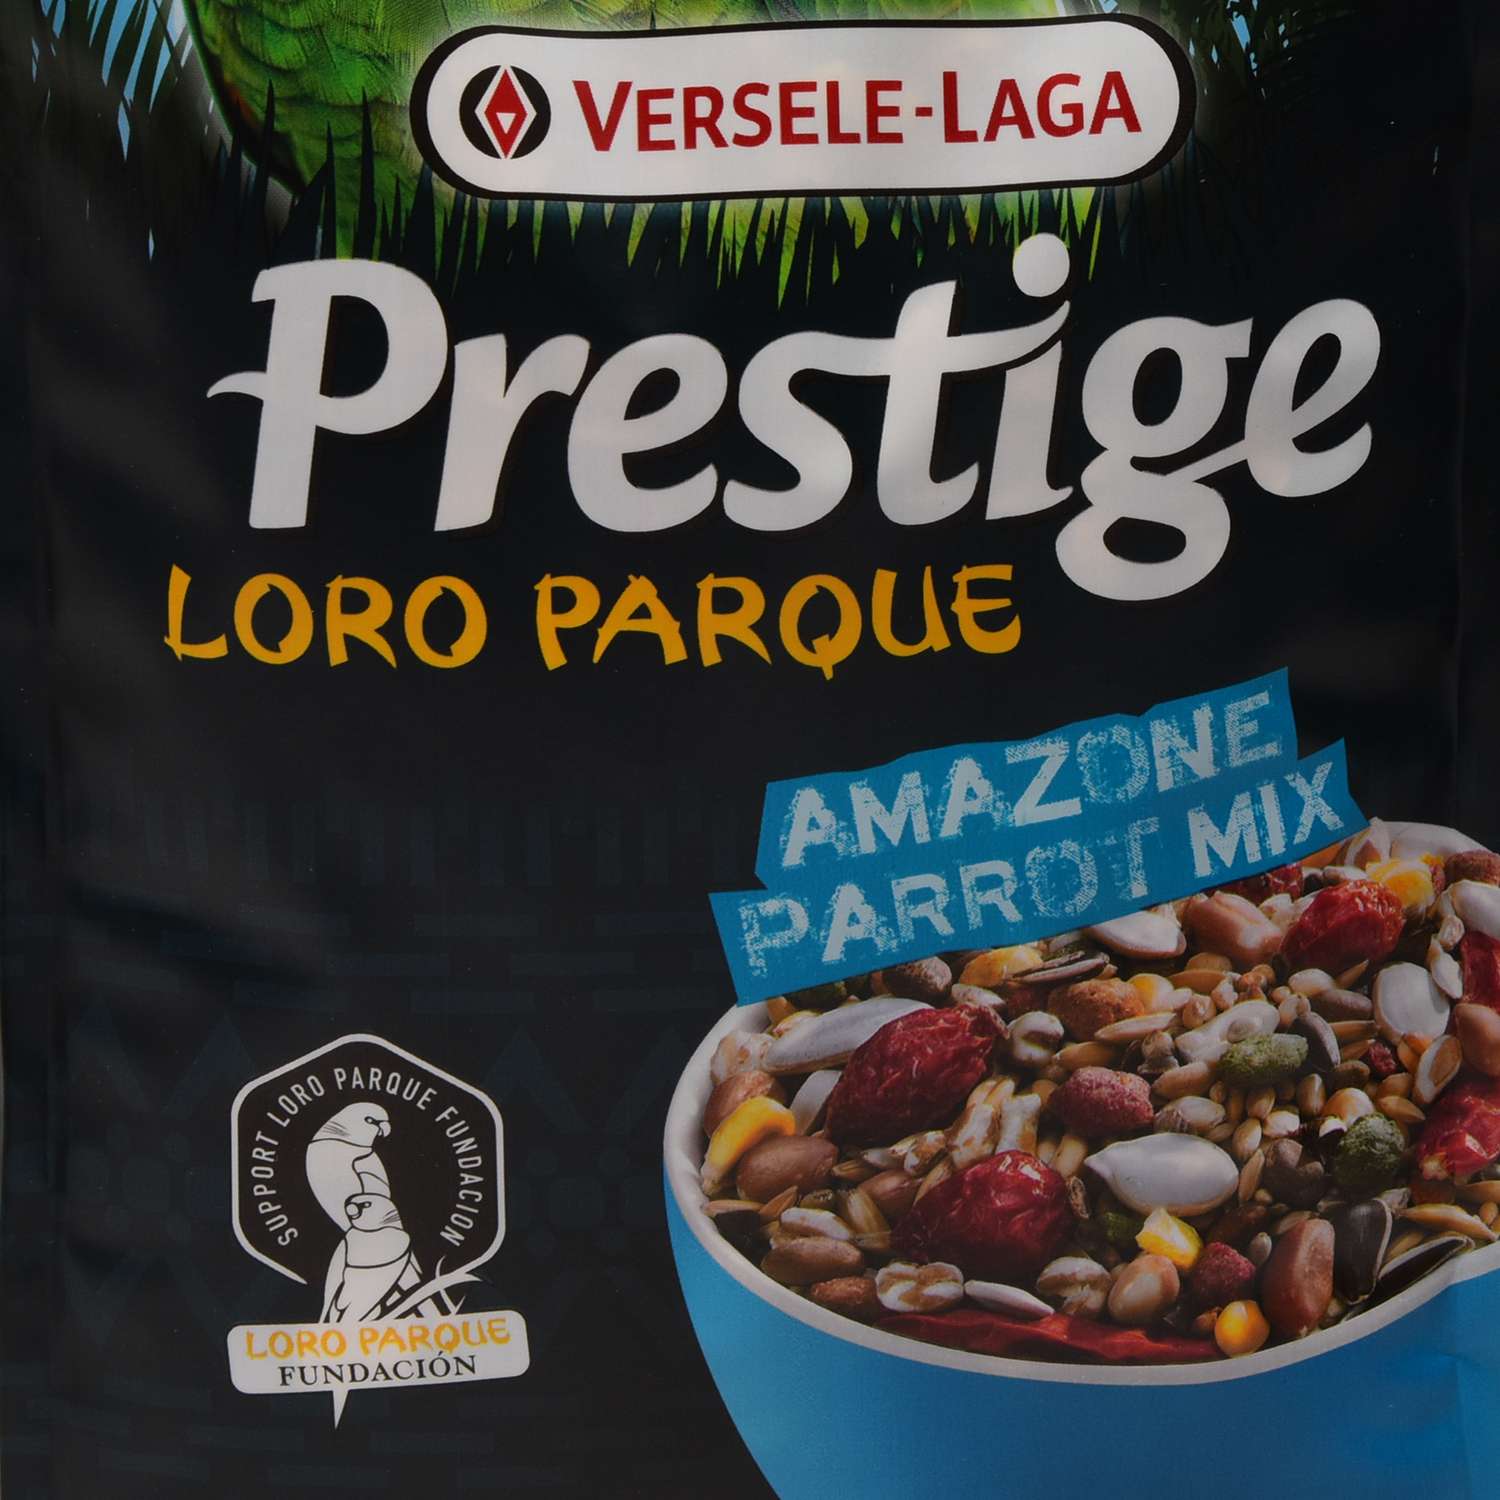 Корм для попугаев Versele-Laga Prestige Premium Amazone Parrot Loro Parque Mix крупных 1кг - фото 2